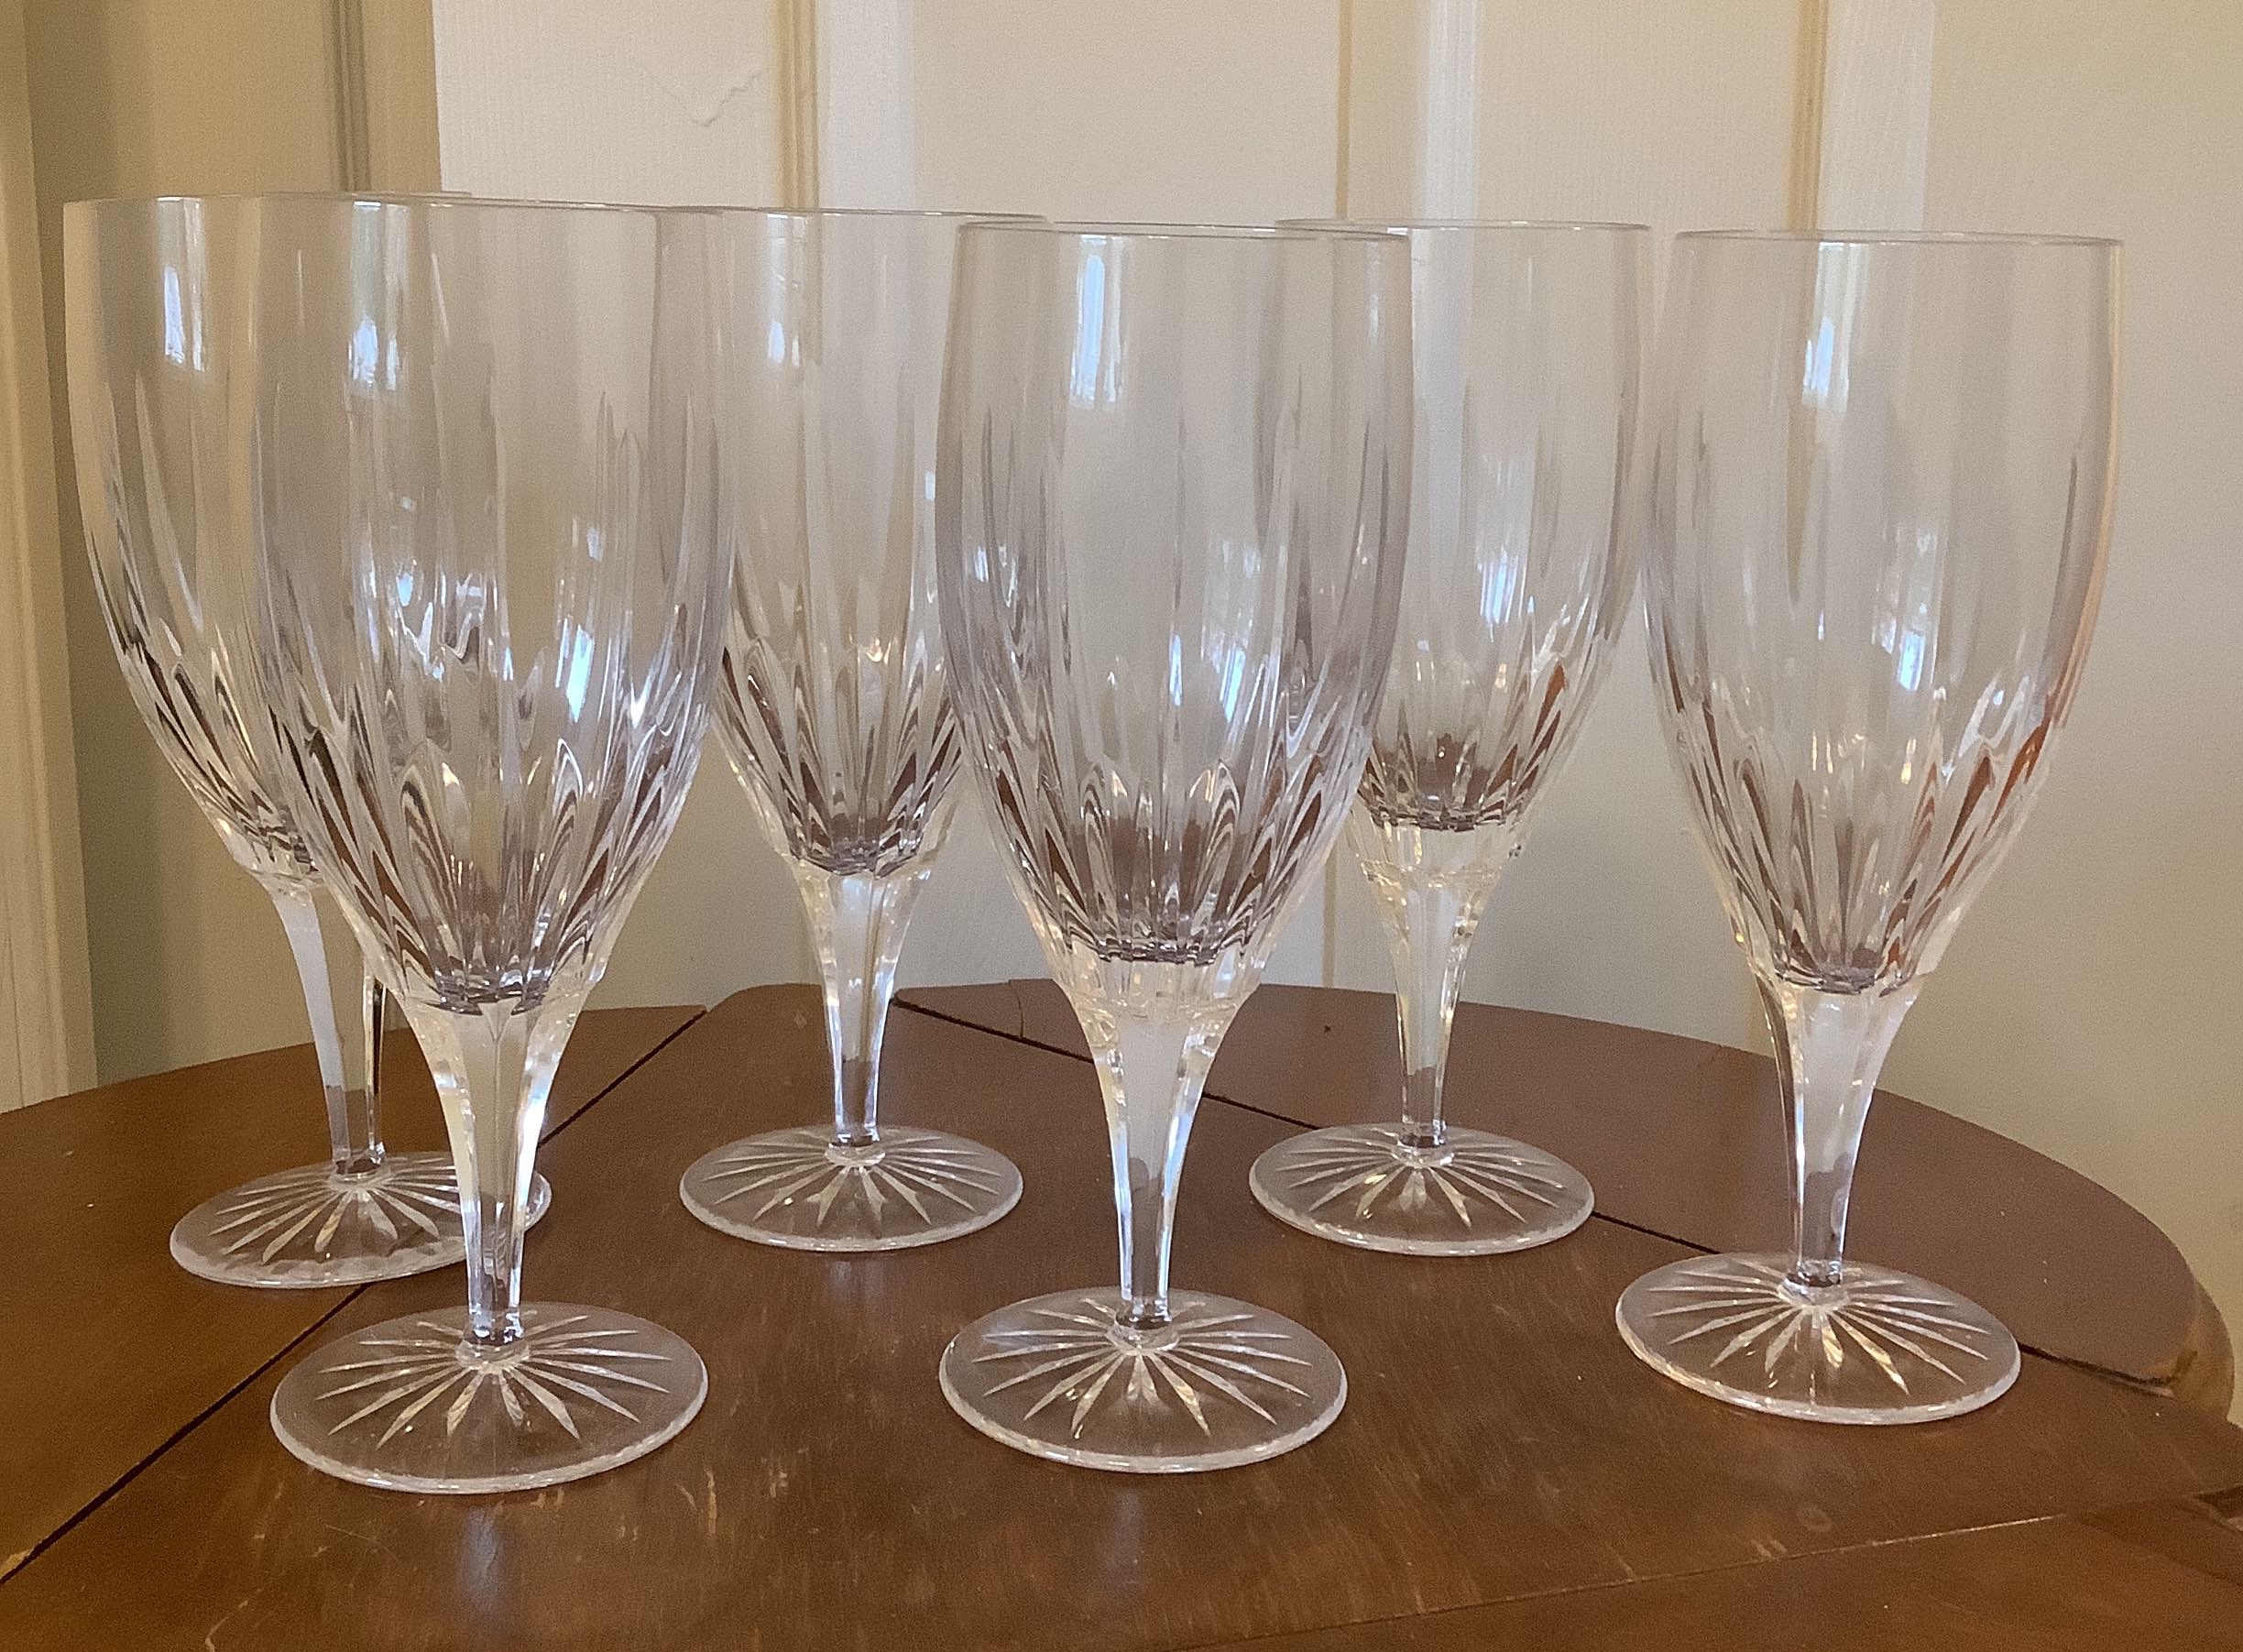 Vintage Wine Glasses Queen by Rogaska Crystal - Set of 4